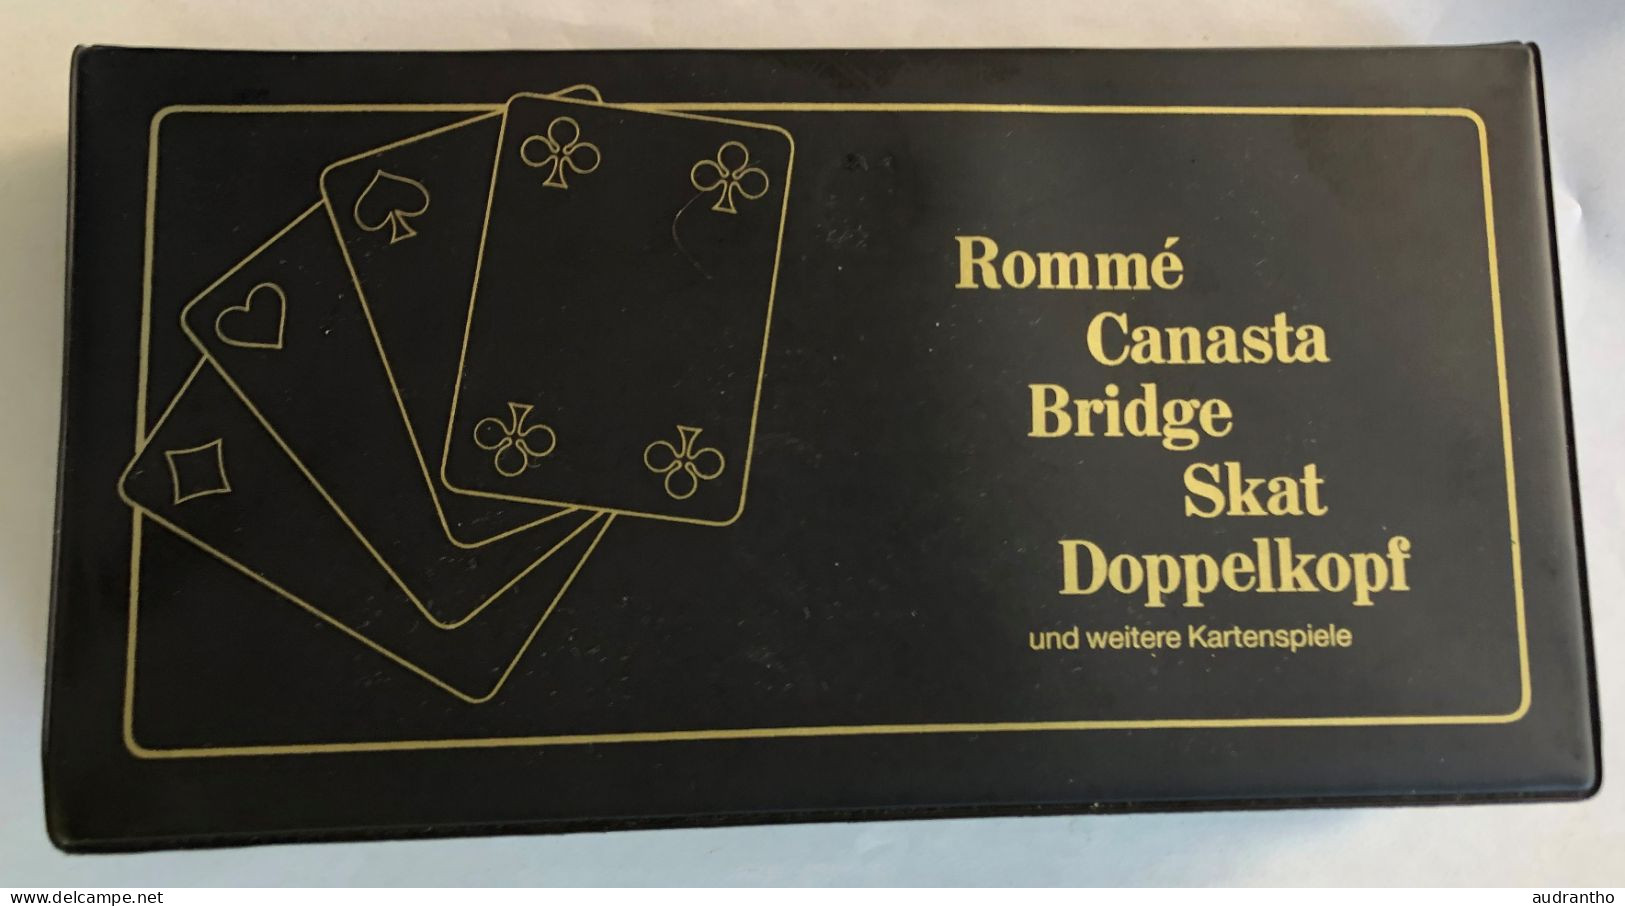 Coffret De 3 Jeux De Cartes Rommé Canasta Bridge Skat Doppelkopf - Kartenspiele - Berliner Spielkarten - 54 Cartas